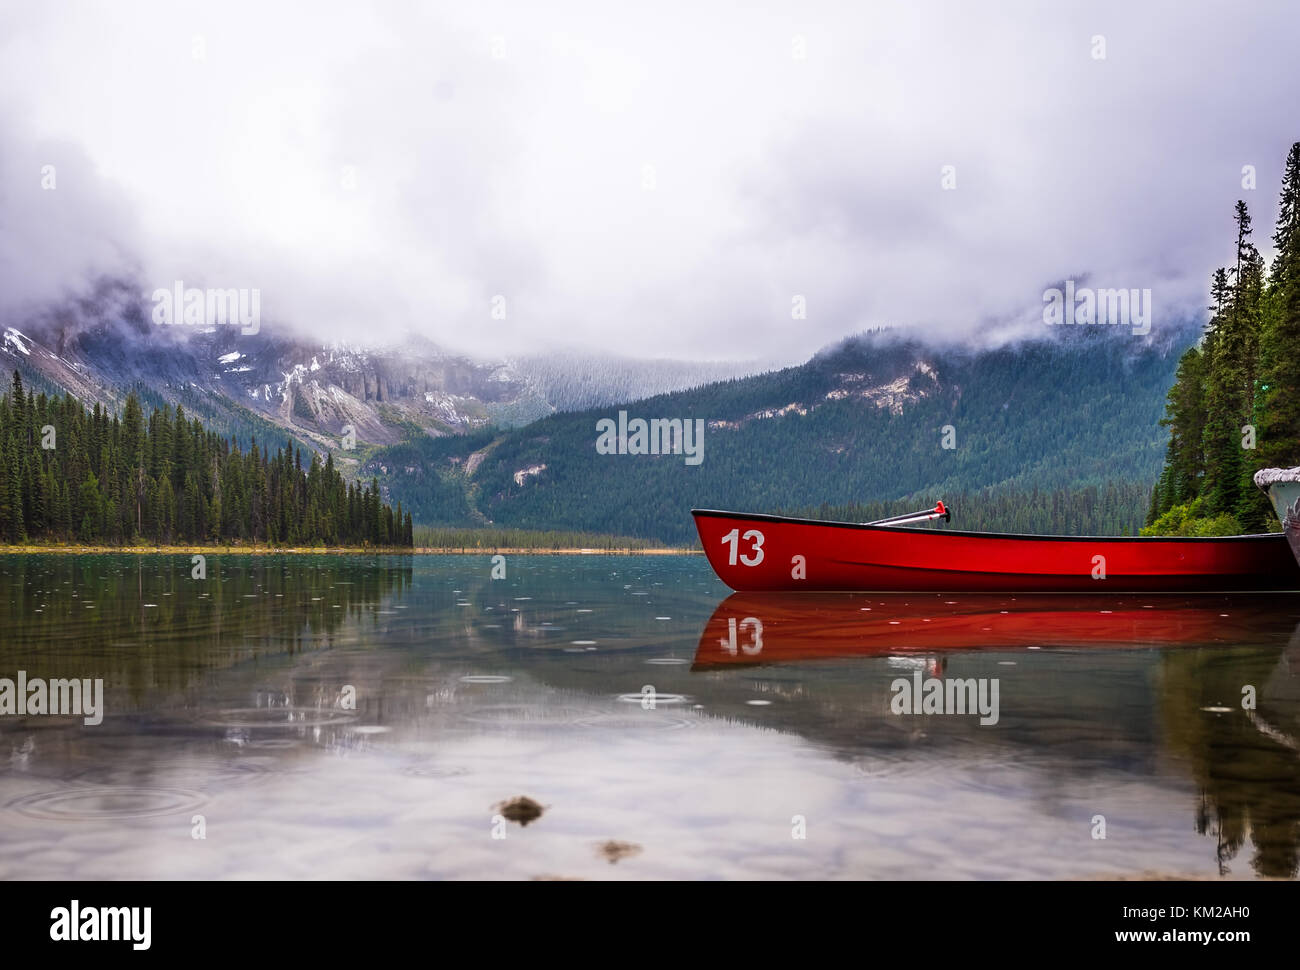 Hermosas montañas rocosas canadienses en el parque nacional Banff Foto de stock